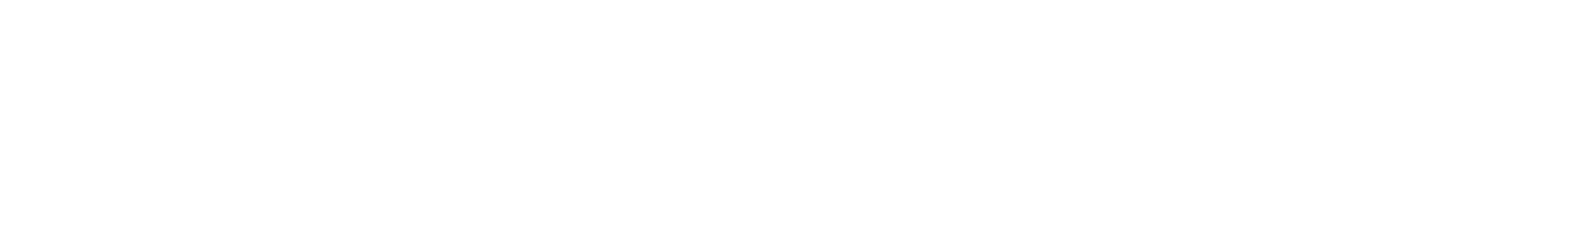 374Water logo grand pour les fonds sombres (PNG transparent)